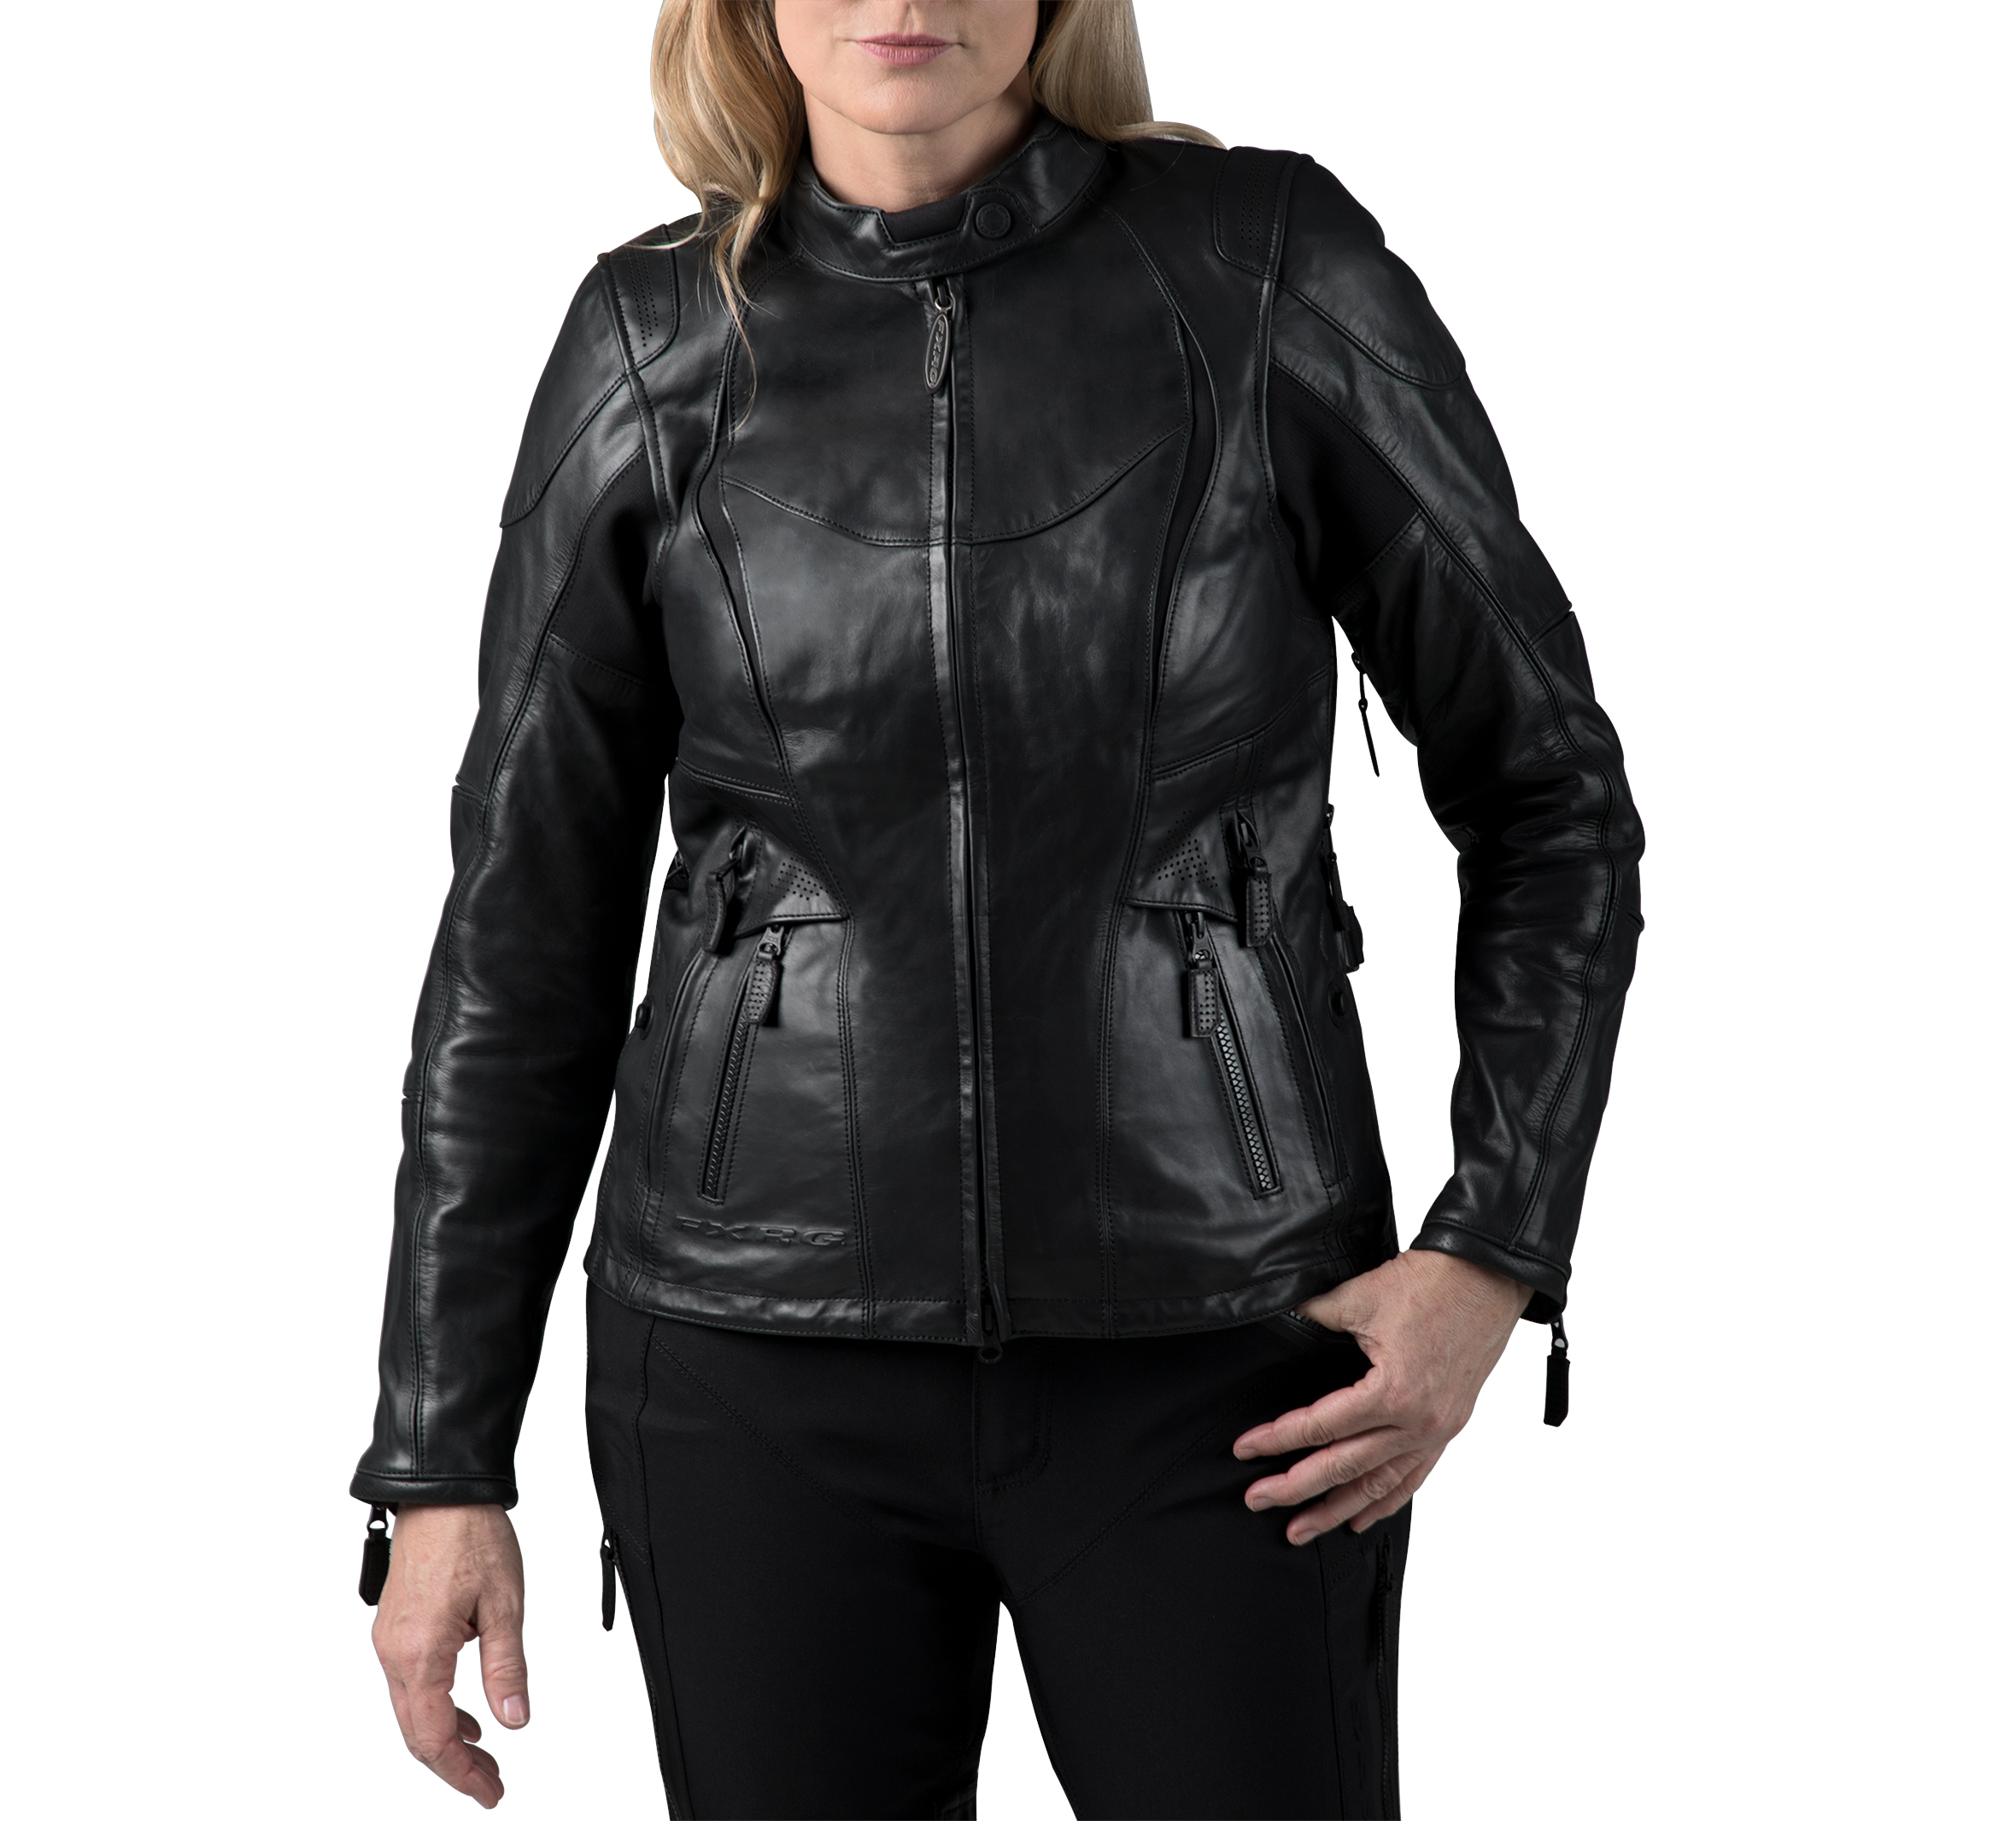 Harley-Davidson, Jackets & Coats, Harleydavidson Fxrg Leather Jacket  Wlining Womens Med